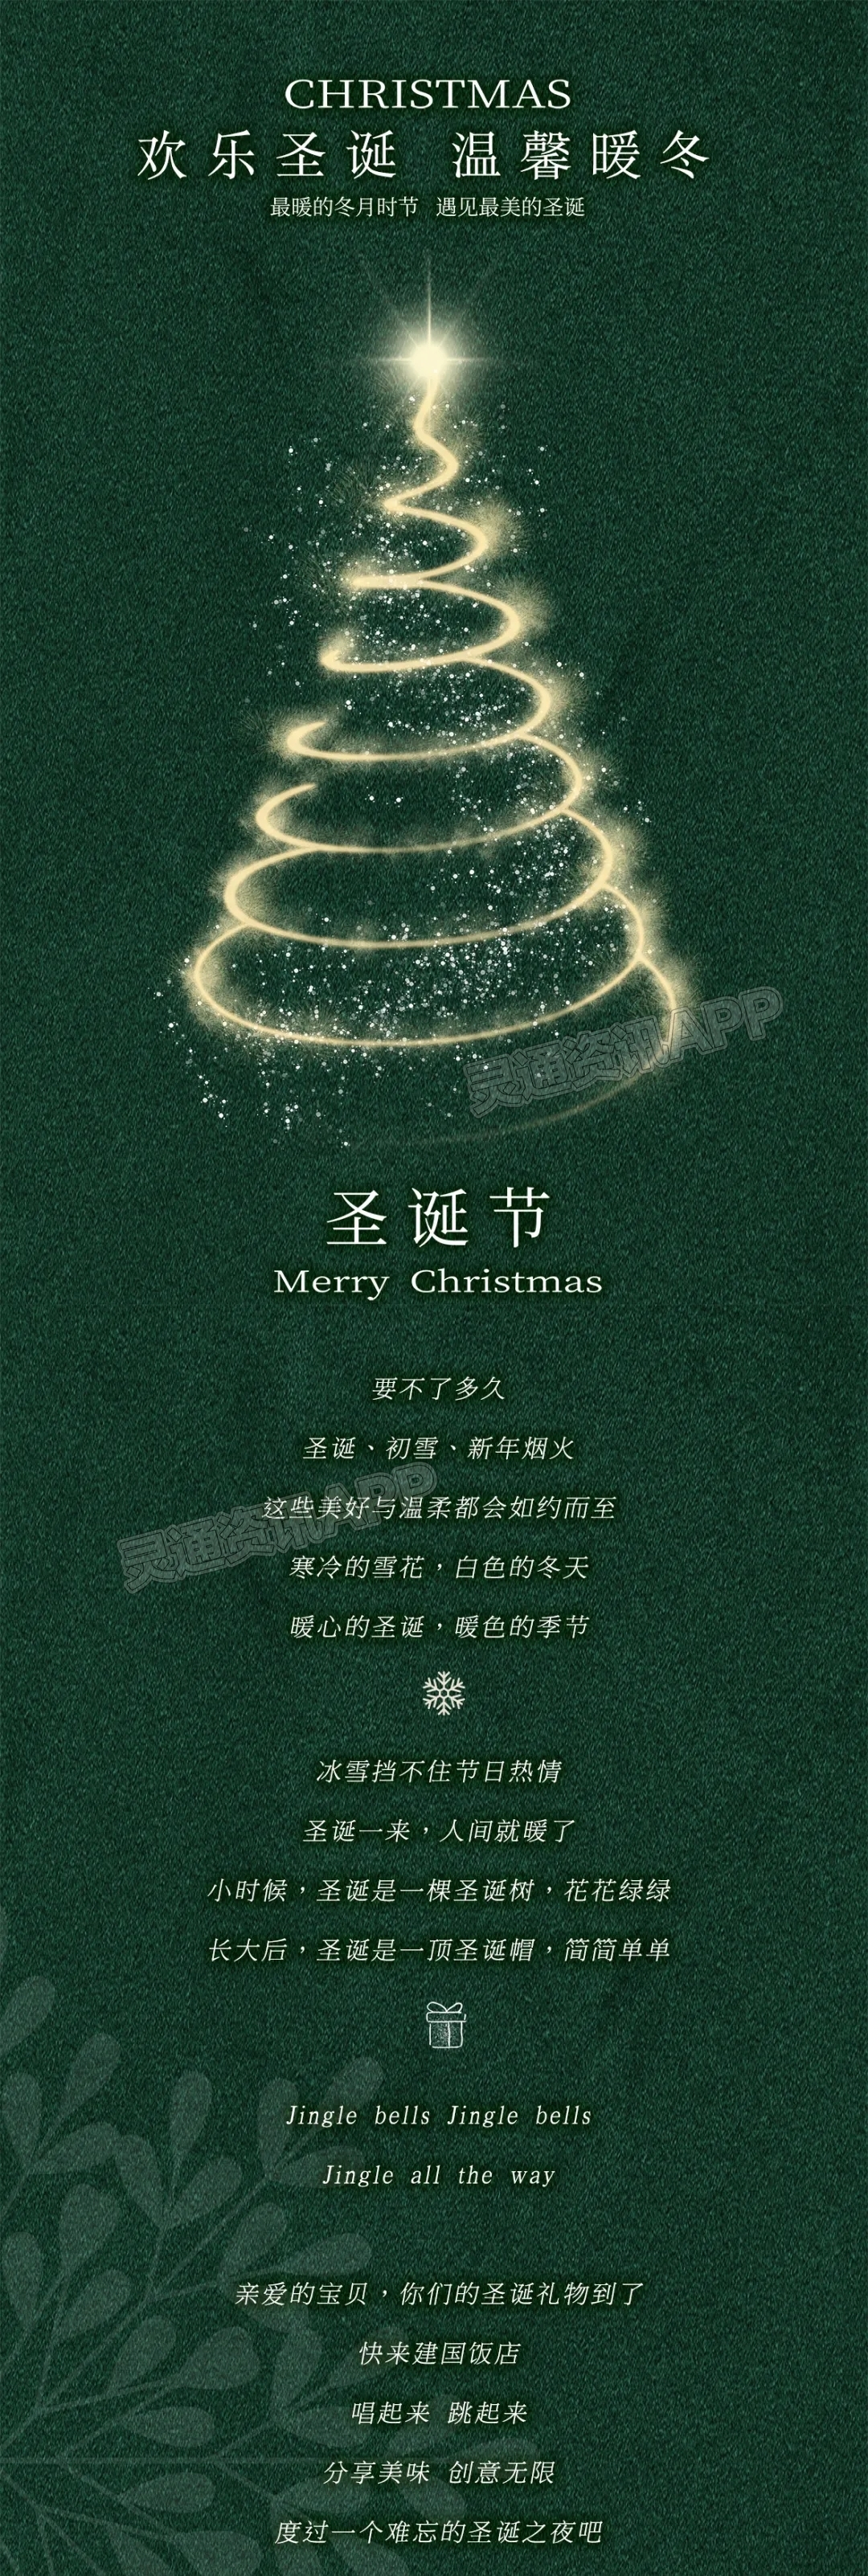 球赛下注平台app官网_建国饭店欢乐圣诞·温暖过冬(图8)